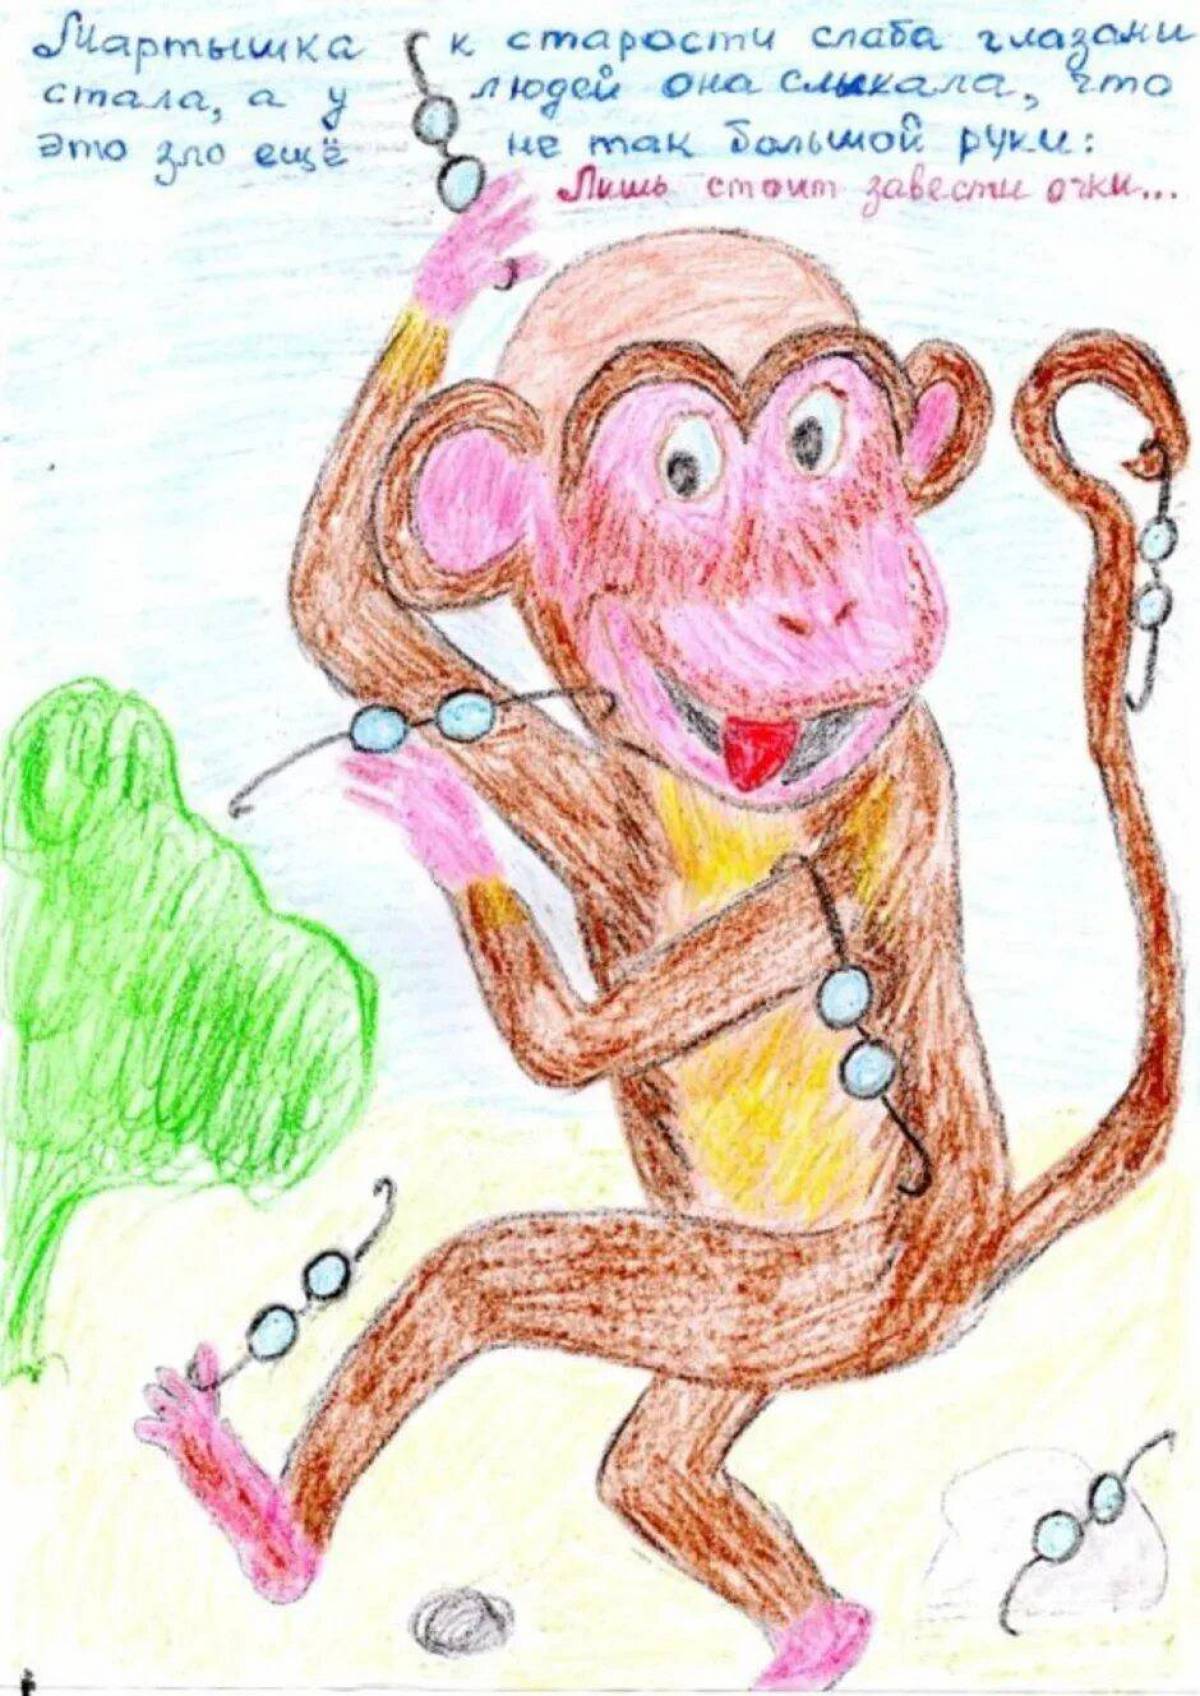 Житков про обезьянку иллюстрации 3 класс. Рисунок к басне Крылова мартышка и очки 3 класс. Житков про обезьянку 3 класс. Иллюстрация к рассказу про обезьянку. Рисунок к рассказу про обезьянку.